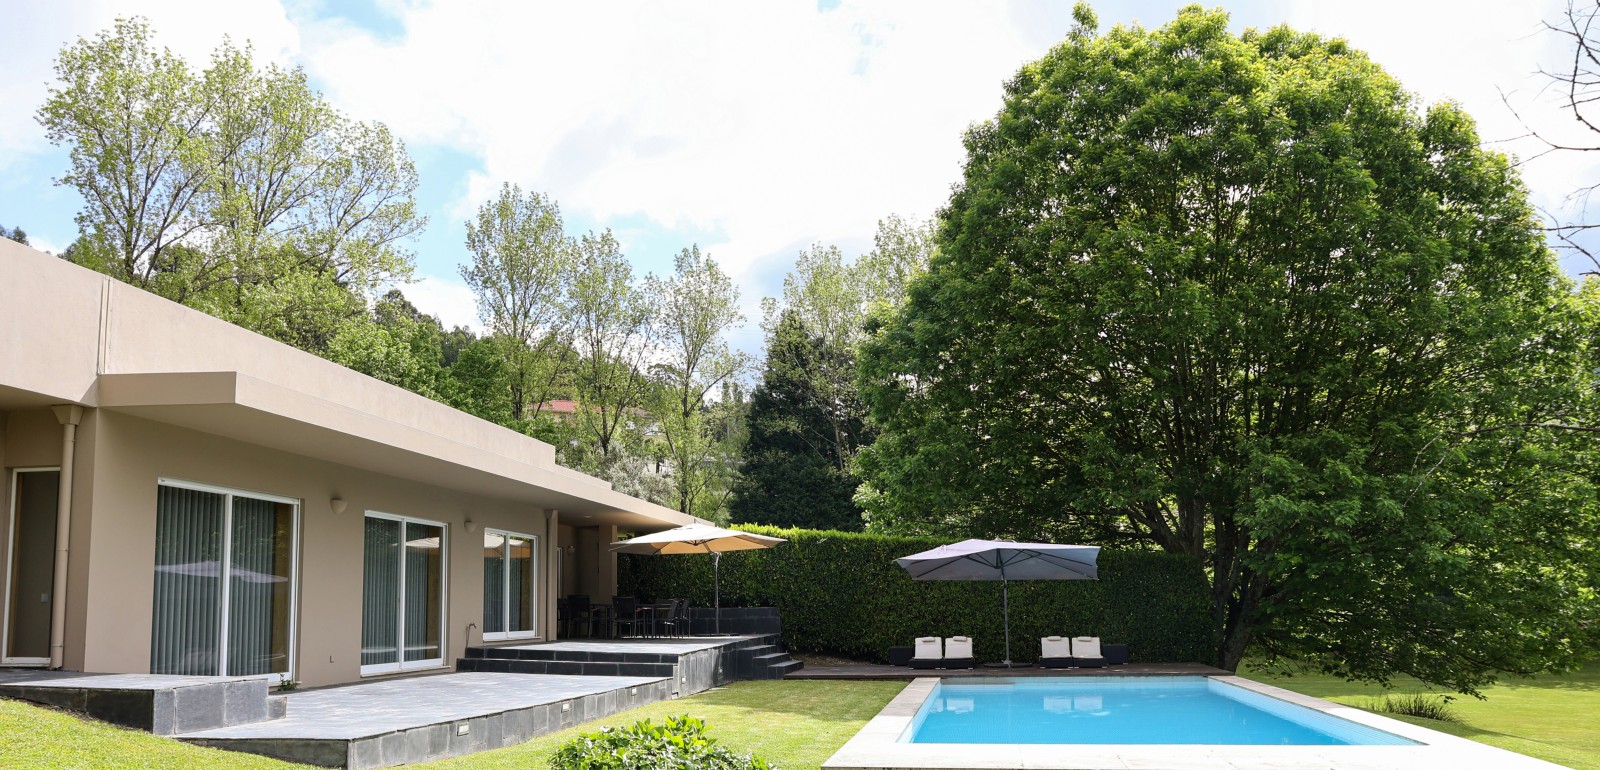 Moradia de luxo com piscina e amplo jardim, Santo Tirso_224053